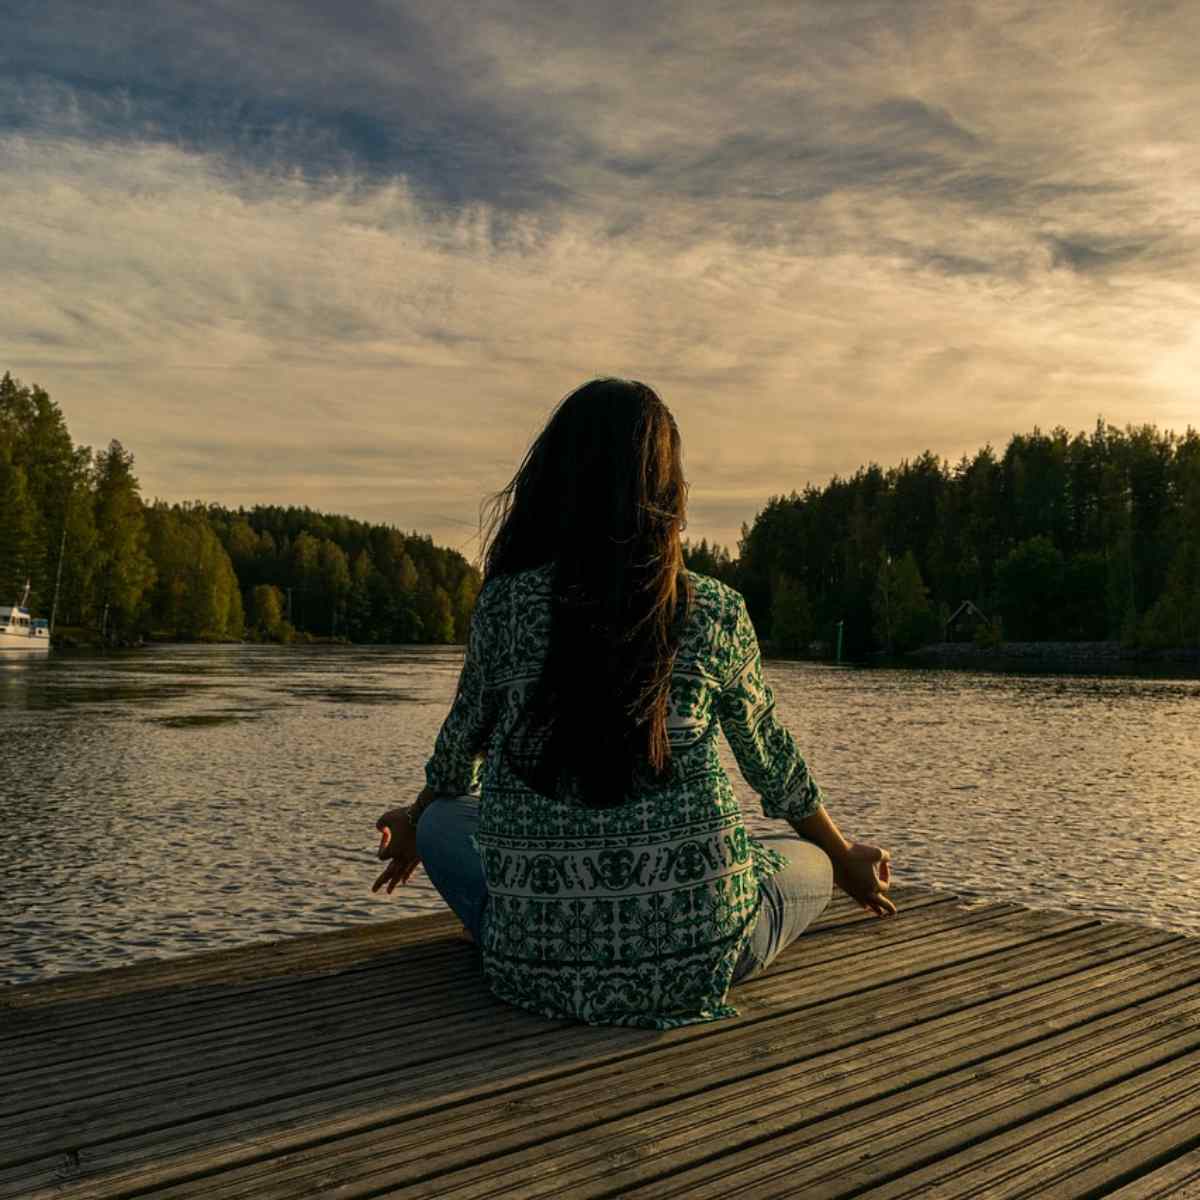  saúde bem estar tranquilidade meditação 